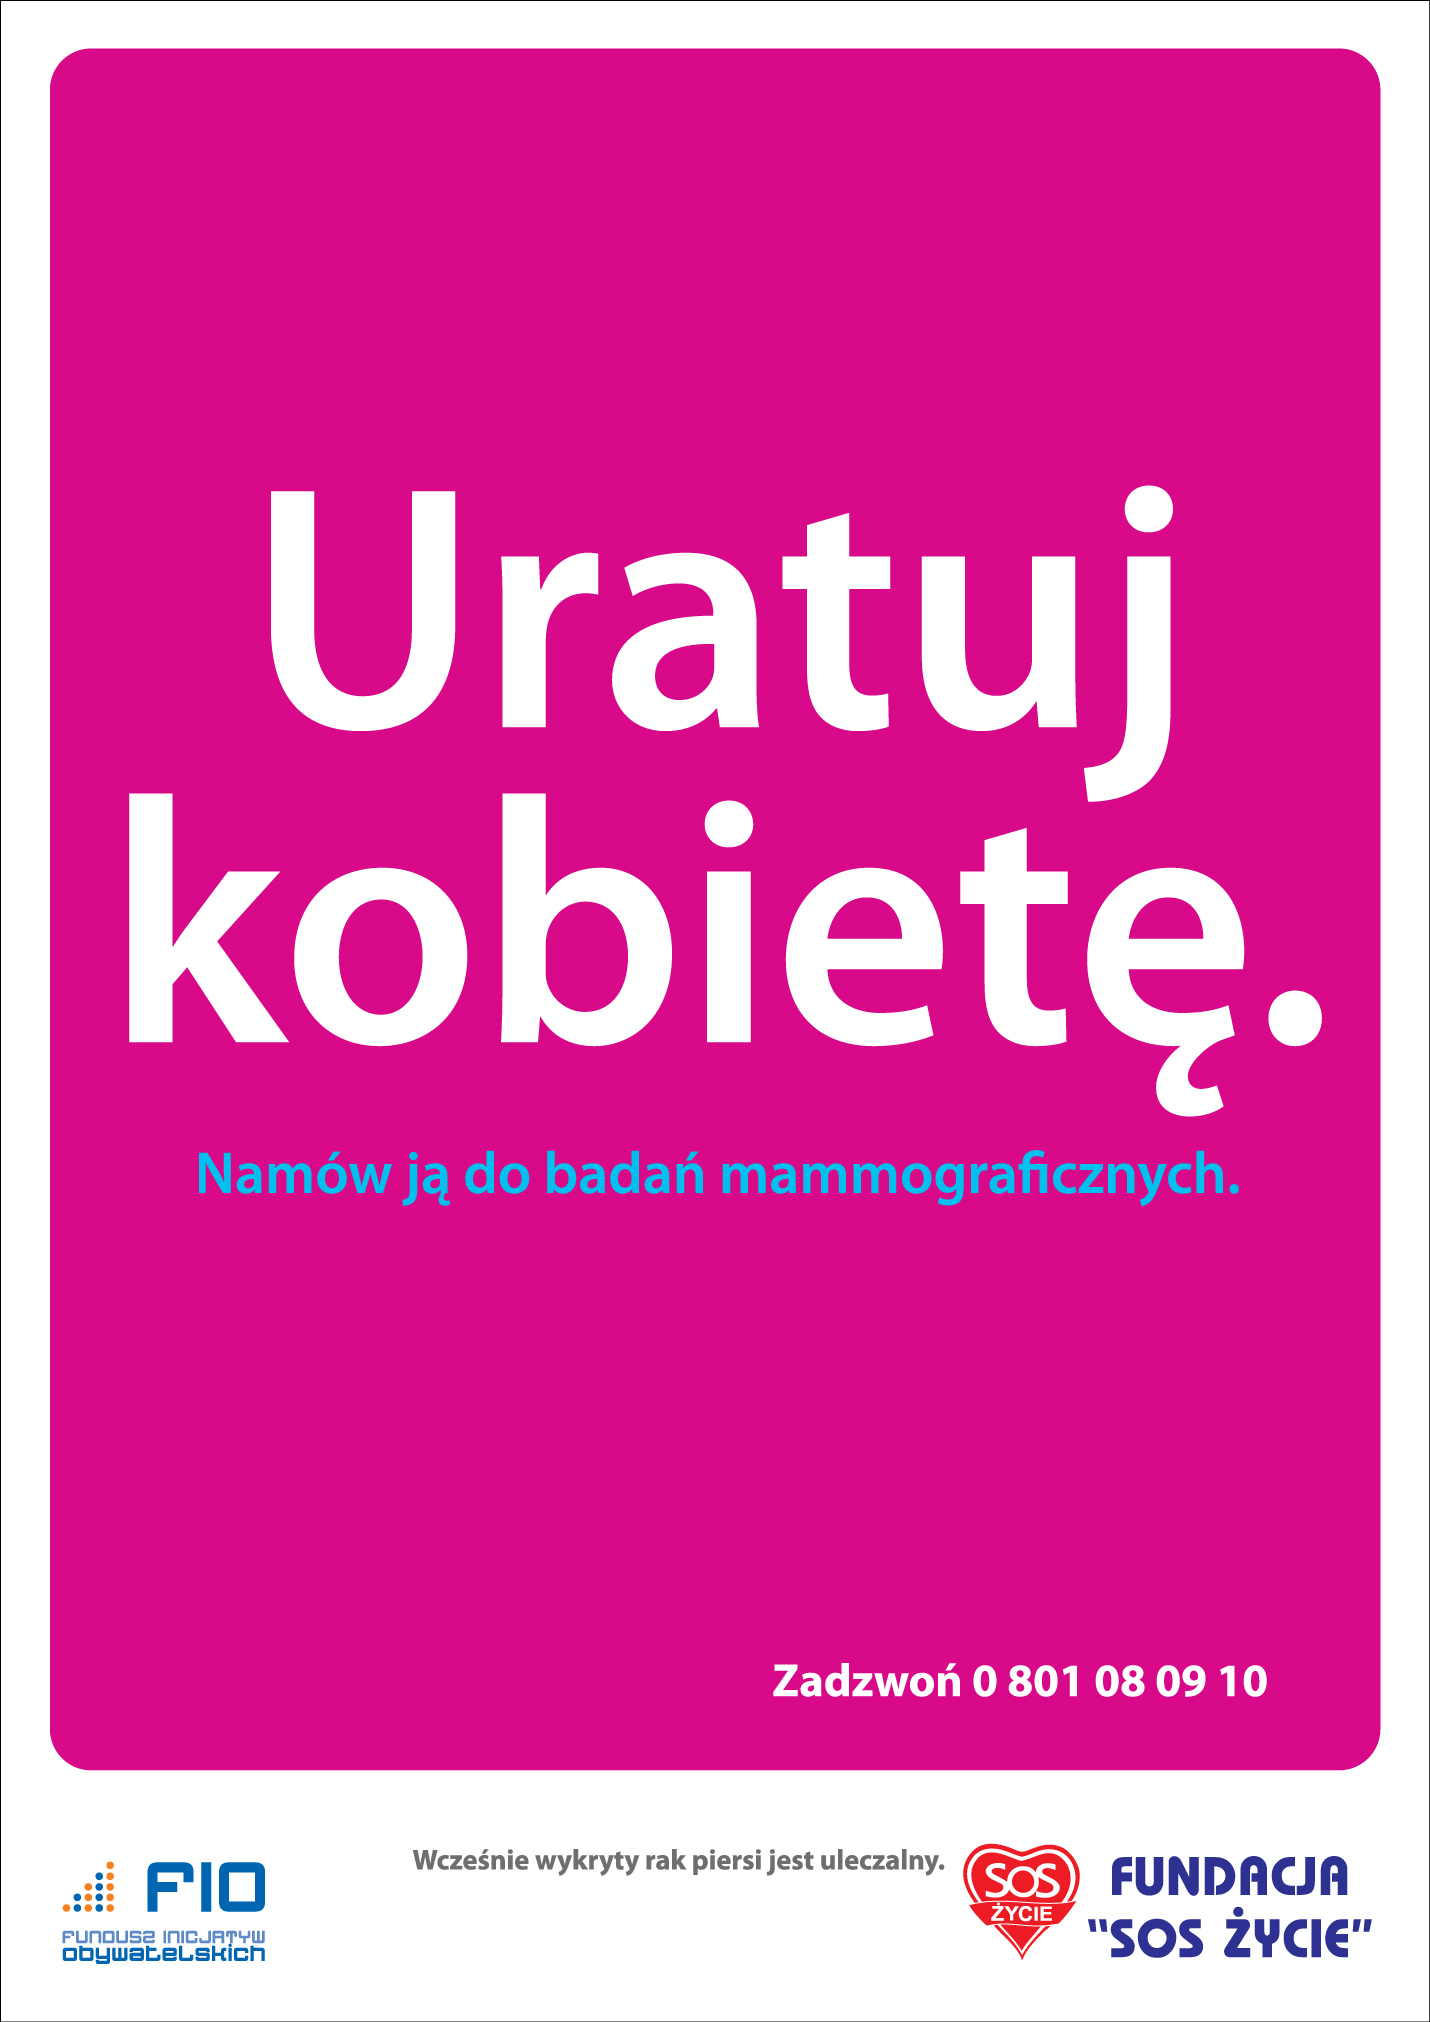 Dzięki uczestnictwu w Programie modelowego skryningu raka piersi i raka szyjki macicy w Polsce w latach 1999-2000 zostaliśmy modelowym ośrodkiem